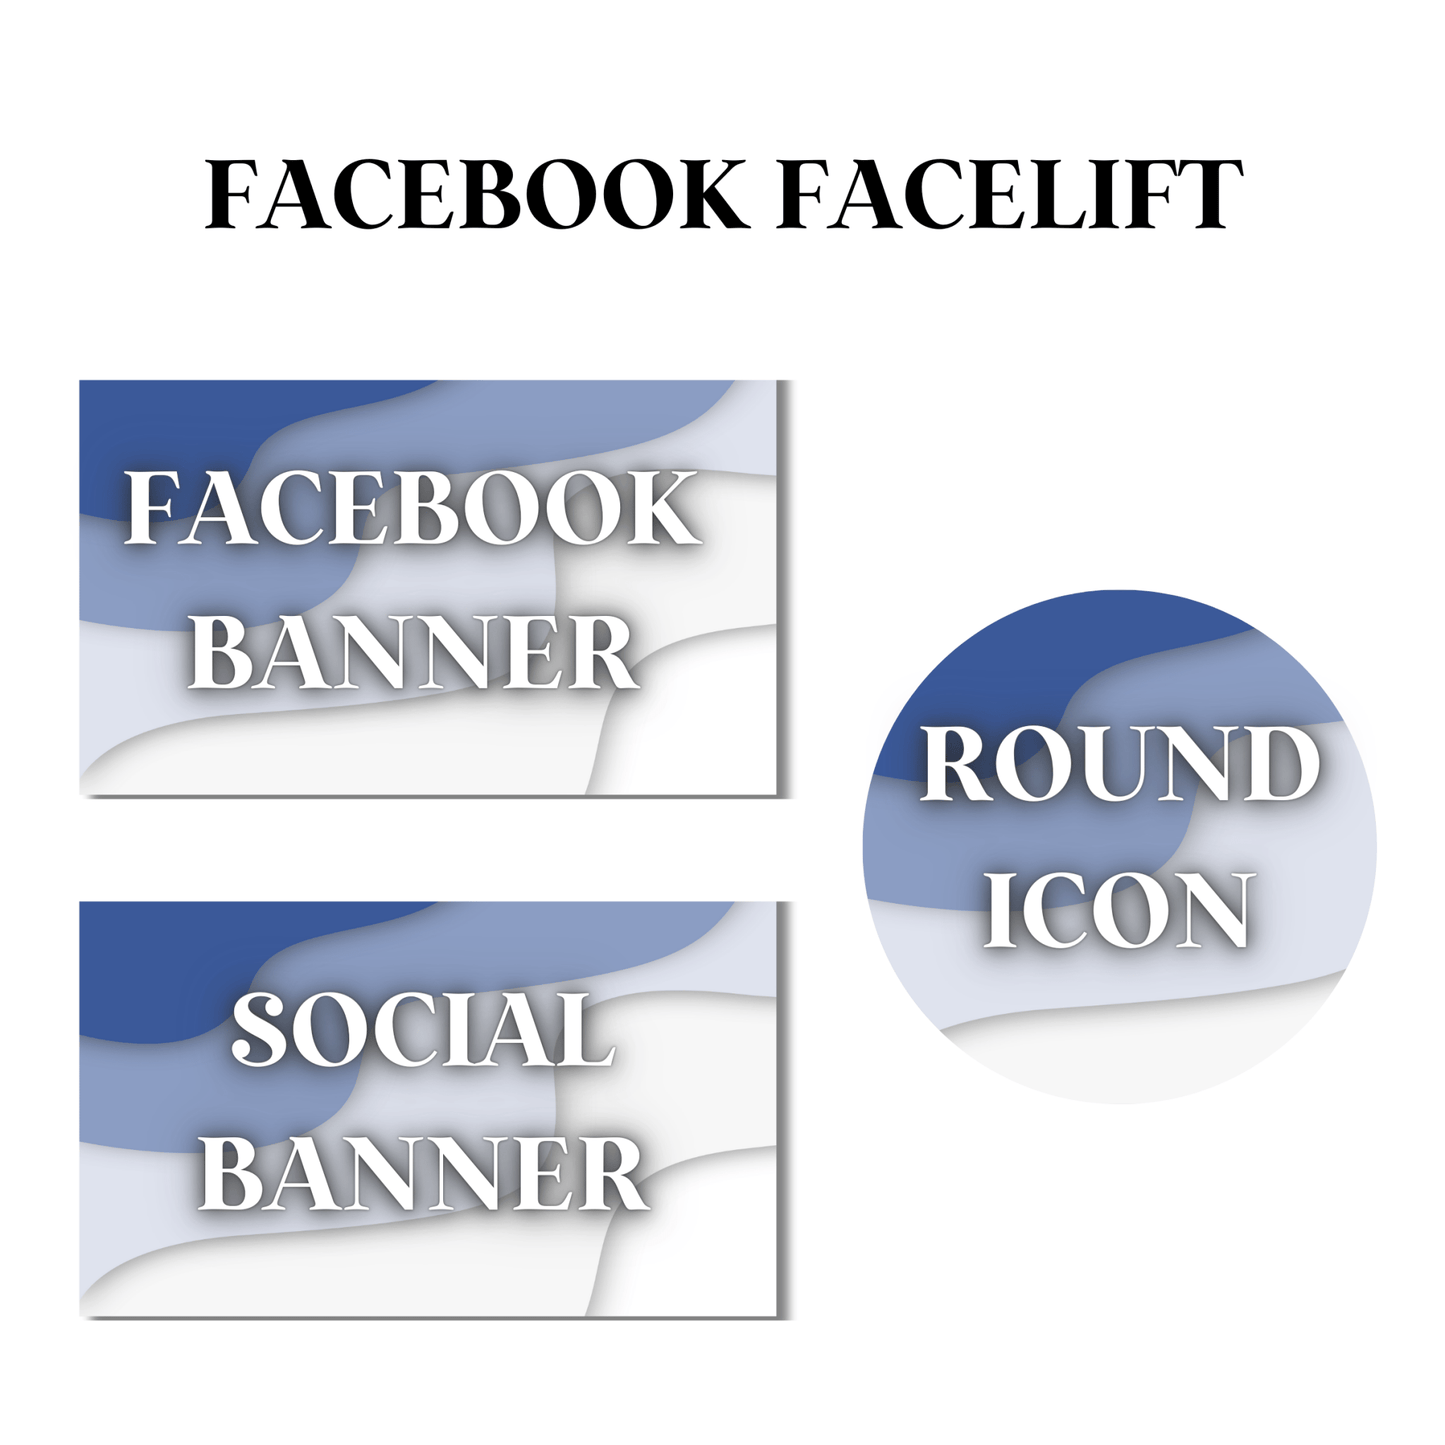 Facebook Facelift - DIGITAL